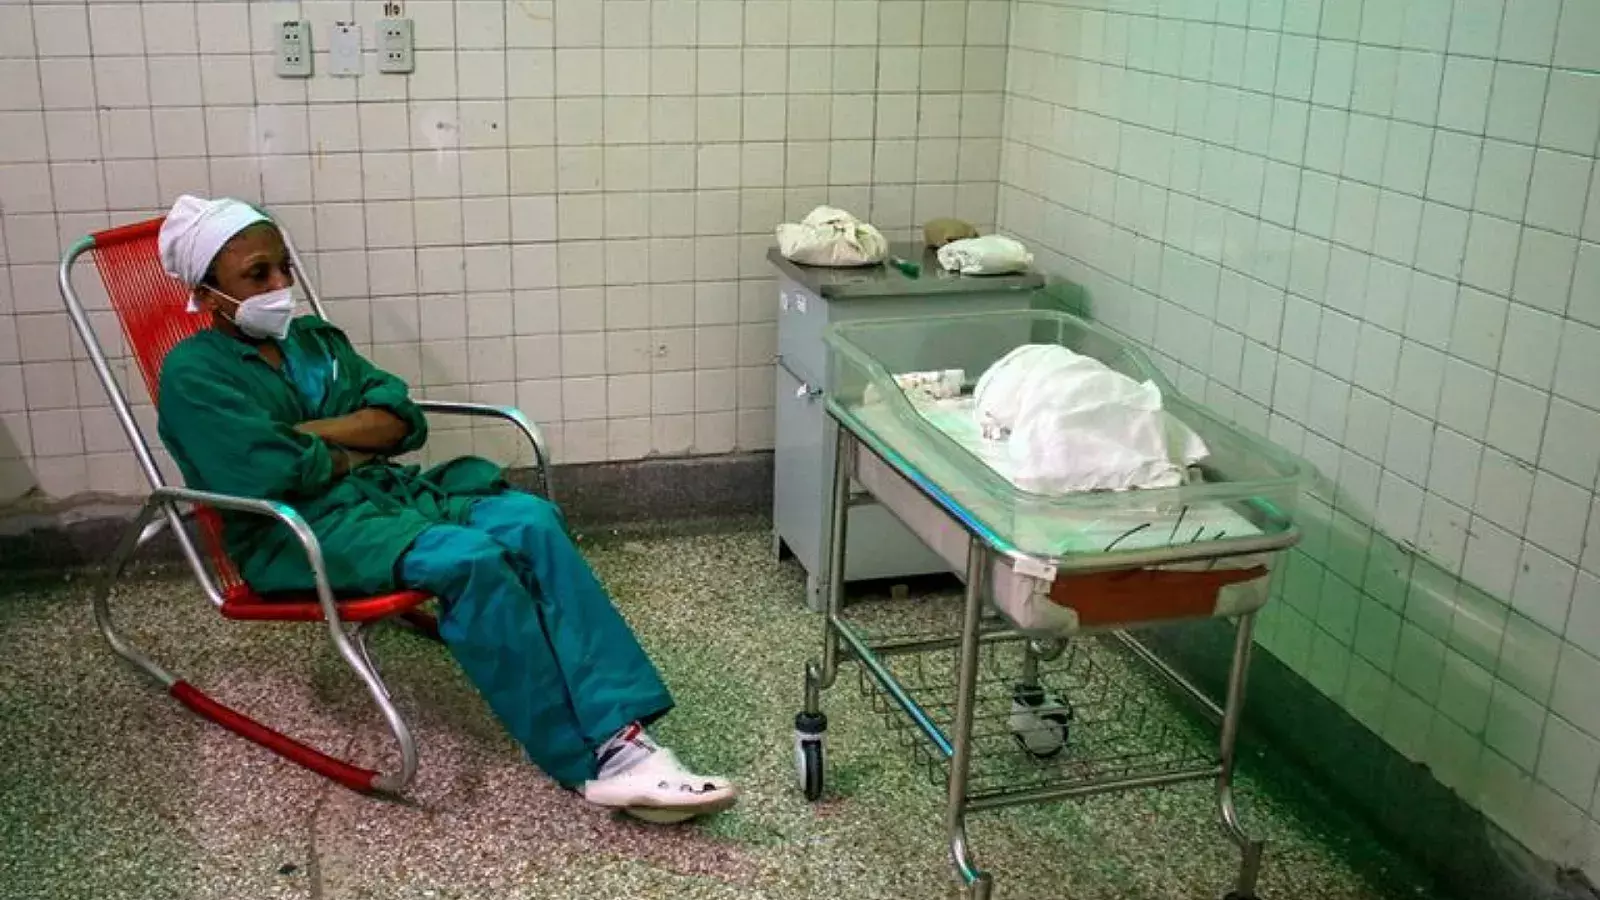 Sala del hospital Hijas de Galicia en La Habana